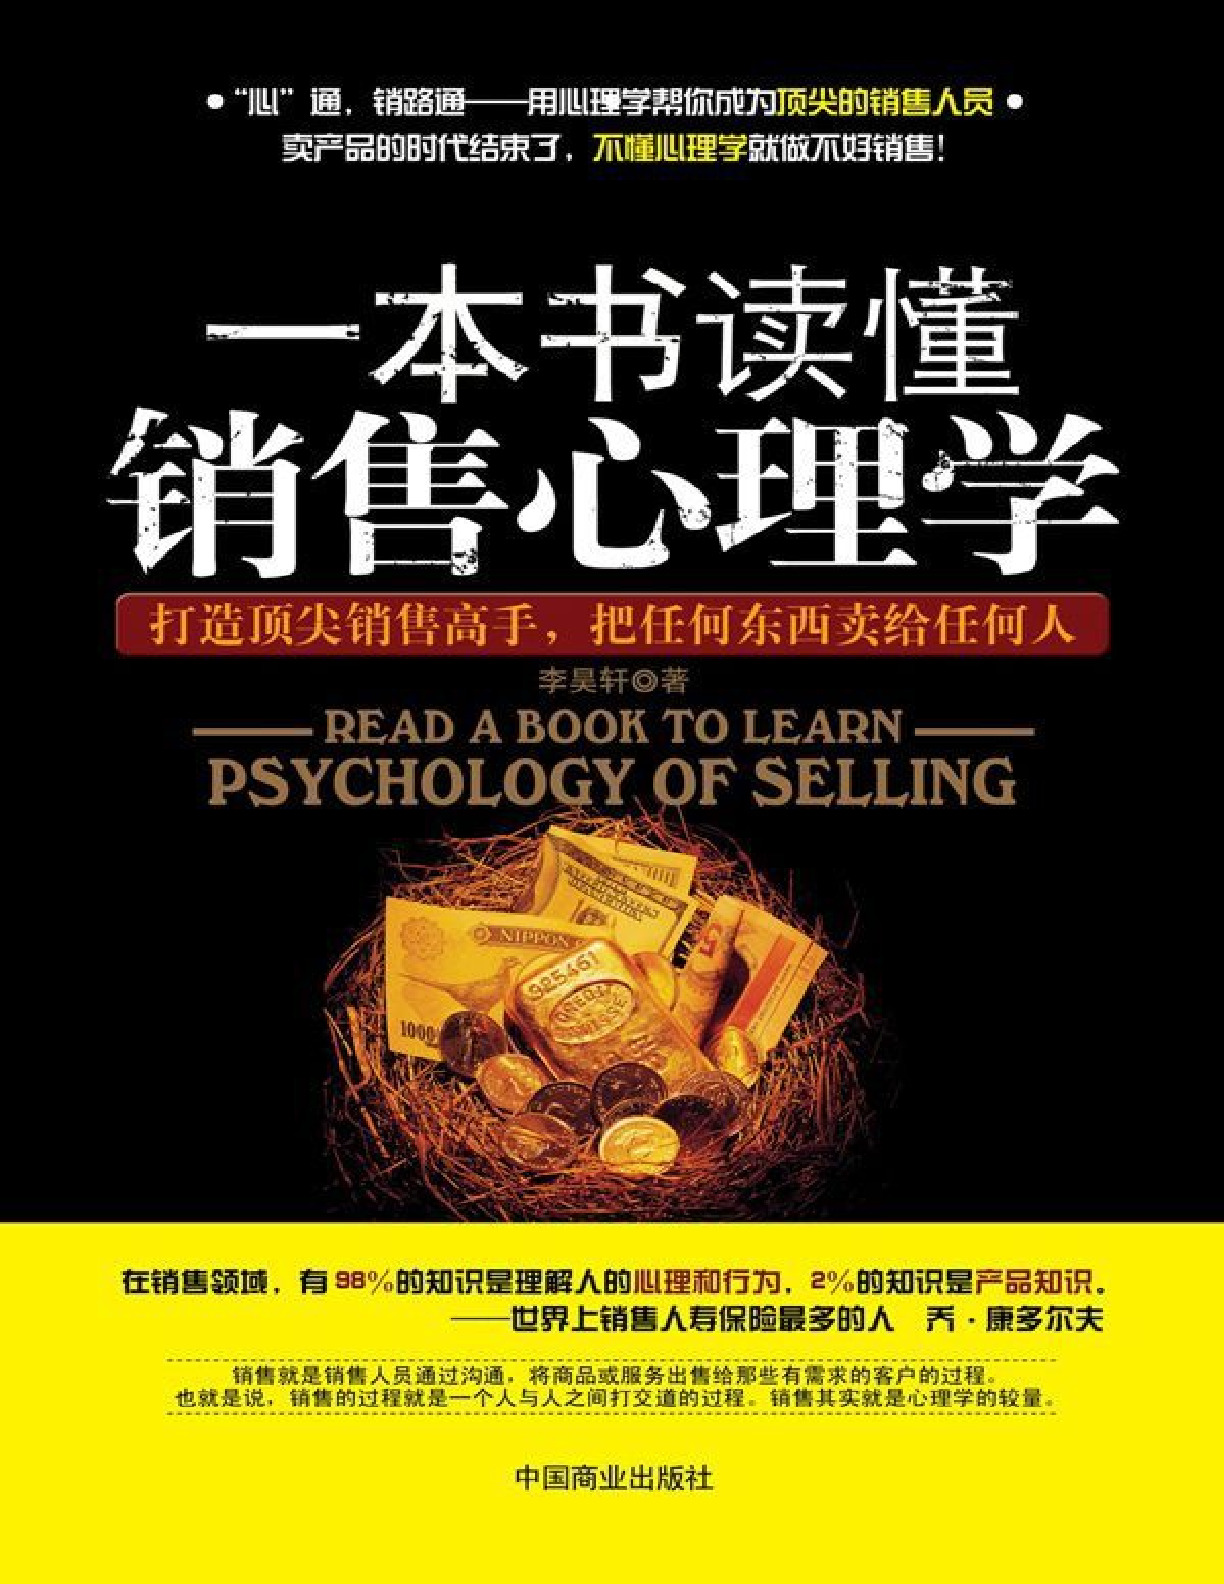 一本书读懂销售心理学 – 李昊轩